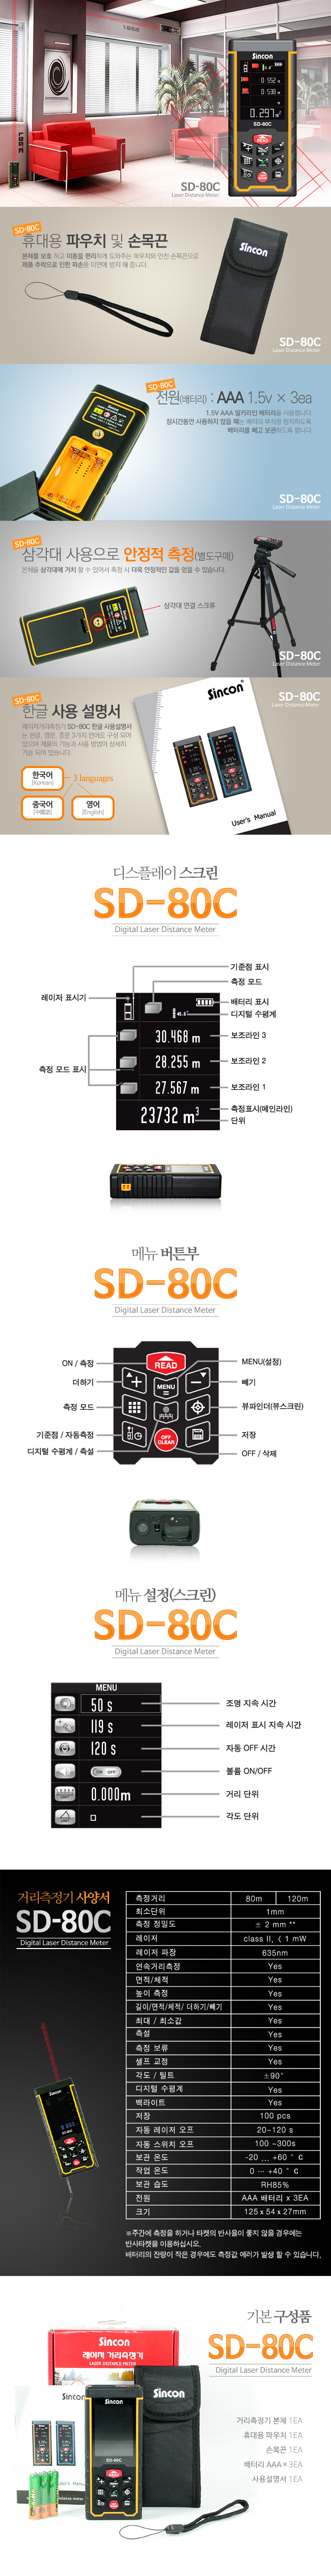 SD-80C(2)